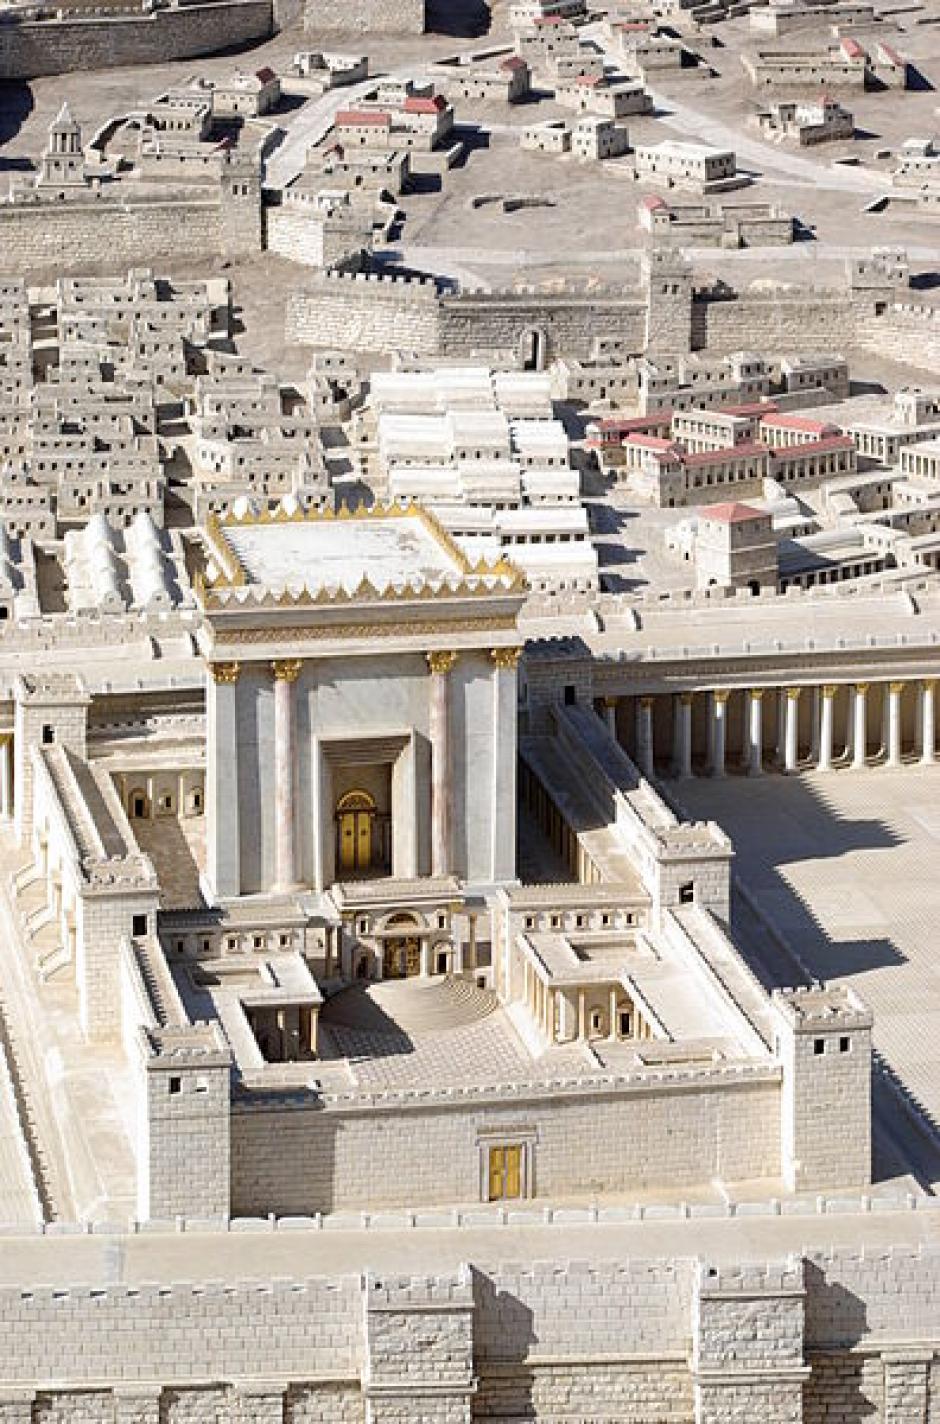 Maqueta del Segundo Templo, cuyas obras fueron llevadas a cabo por Herodes el Grande